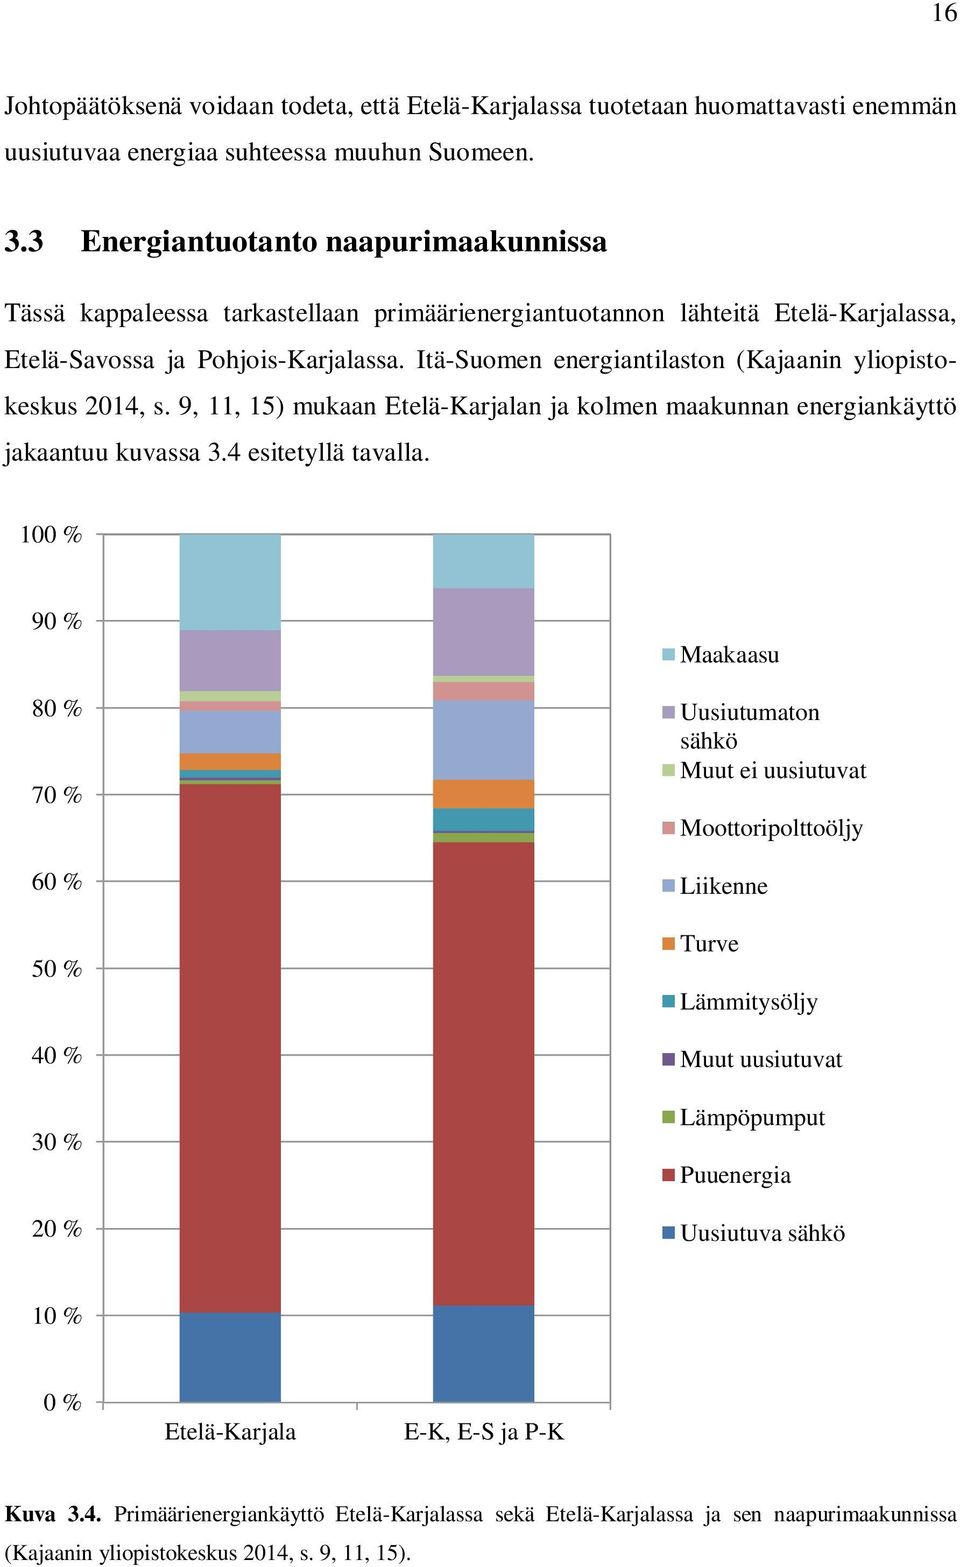 Itä-Suomen energiantilaston (Kajaanin yliopistokeskus 2014, s. 9, 11, 15) mukaan Etelä-Karjalan ja kolmen maakunnan energiankäyttö jakaantuu kuvassa 3.4 esitetyllä tavalla.